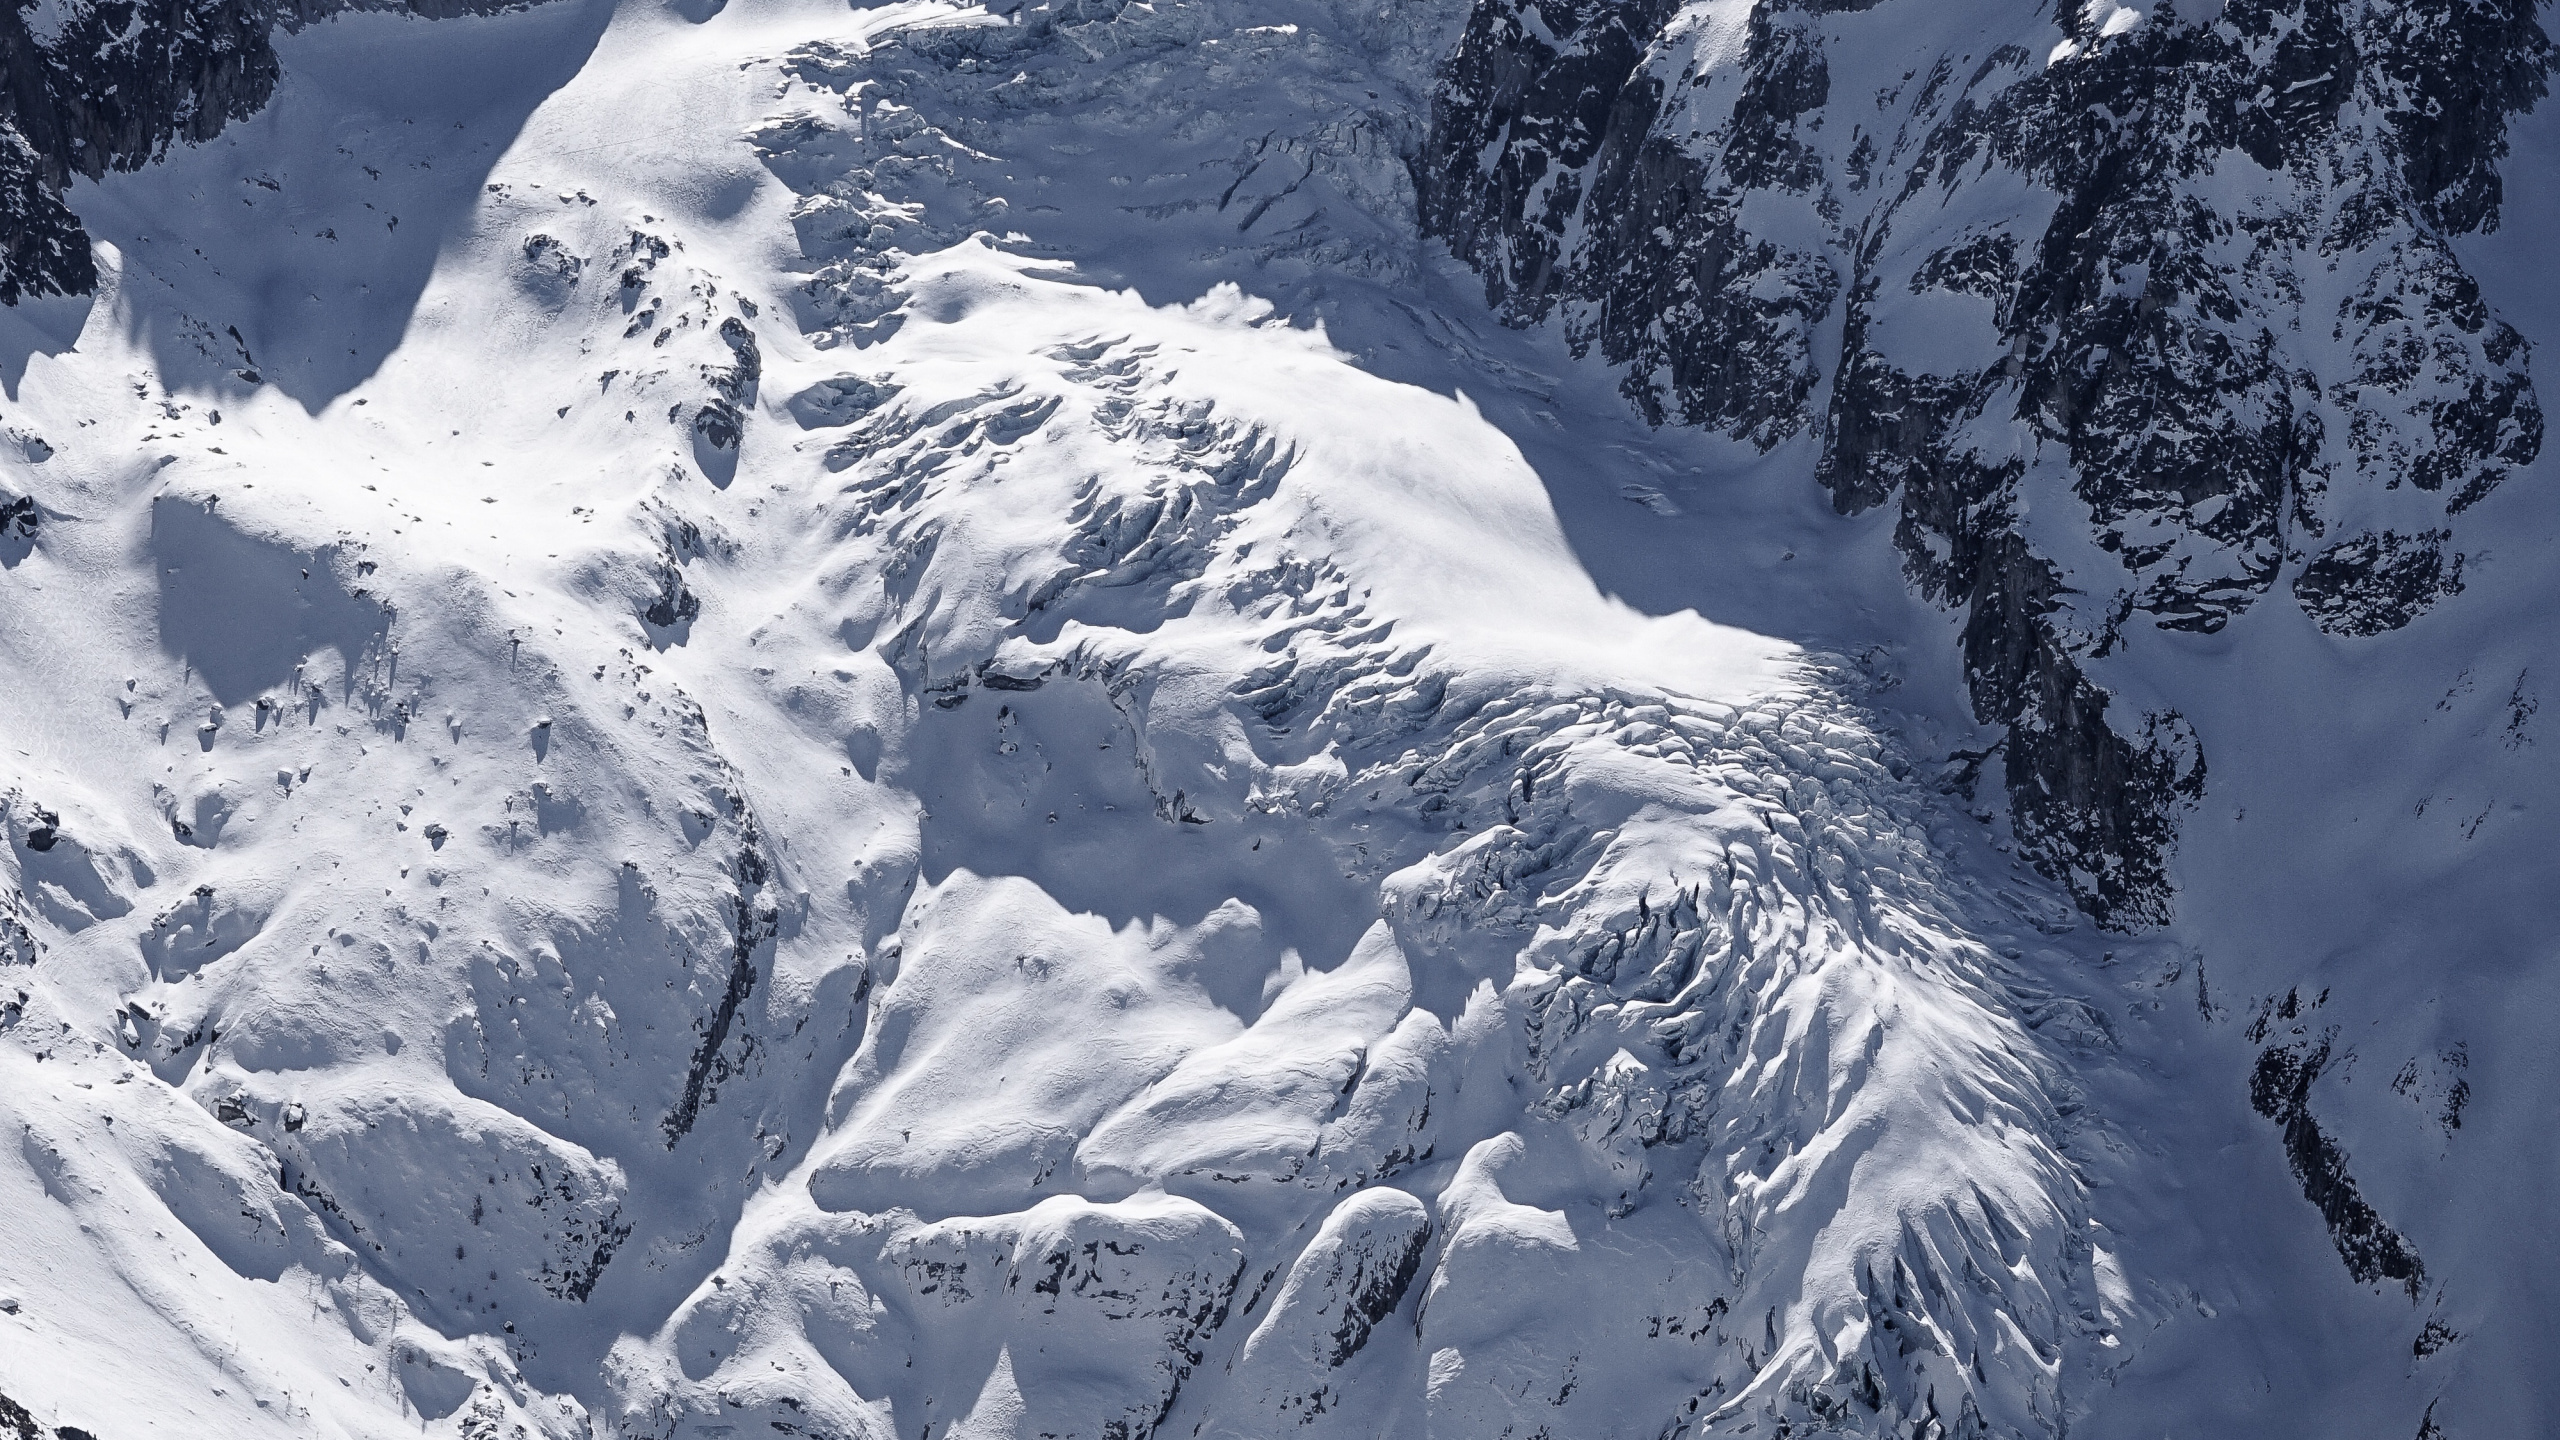 Las Formaciones Montañosas, Montaña, Glaciar de Terreno, Macizo, Alpes. Wallpaper in 2560x1440 Resolution